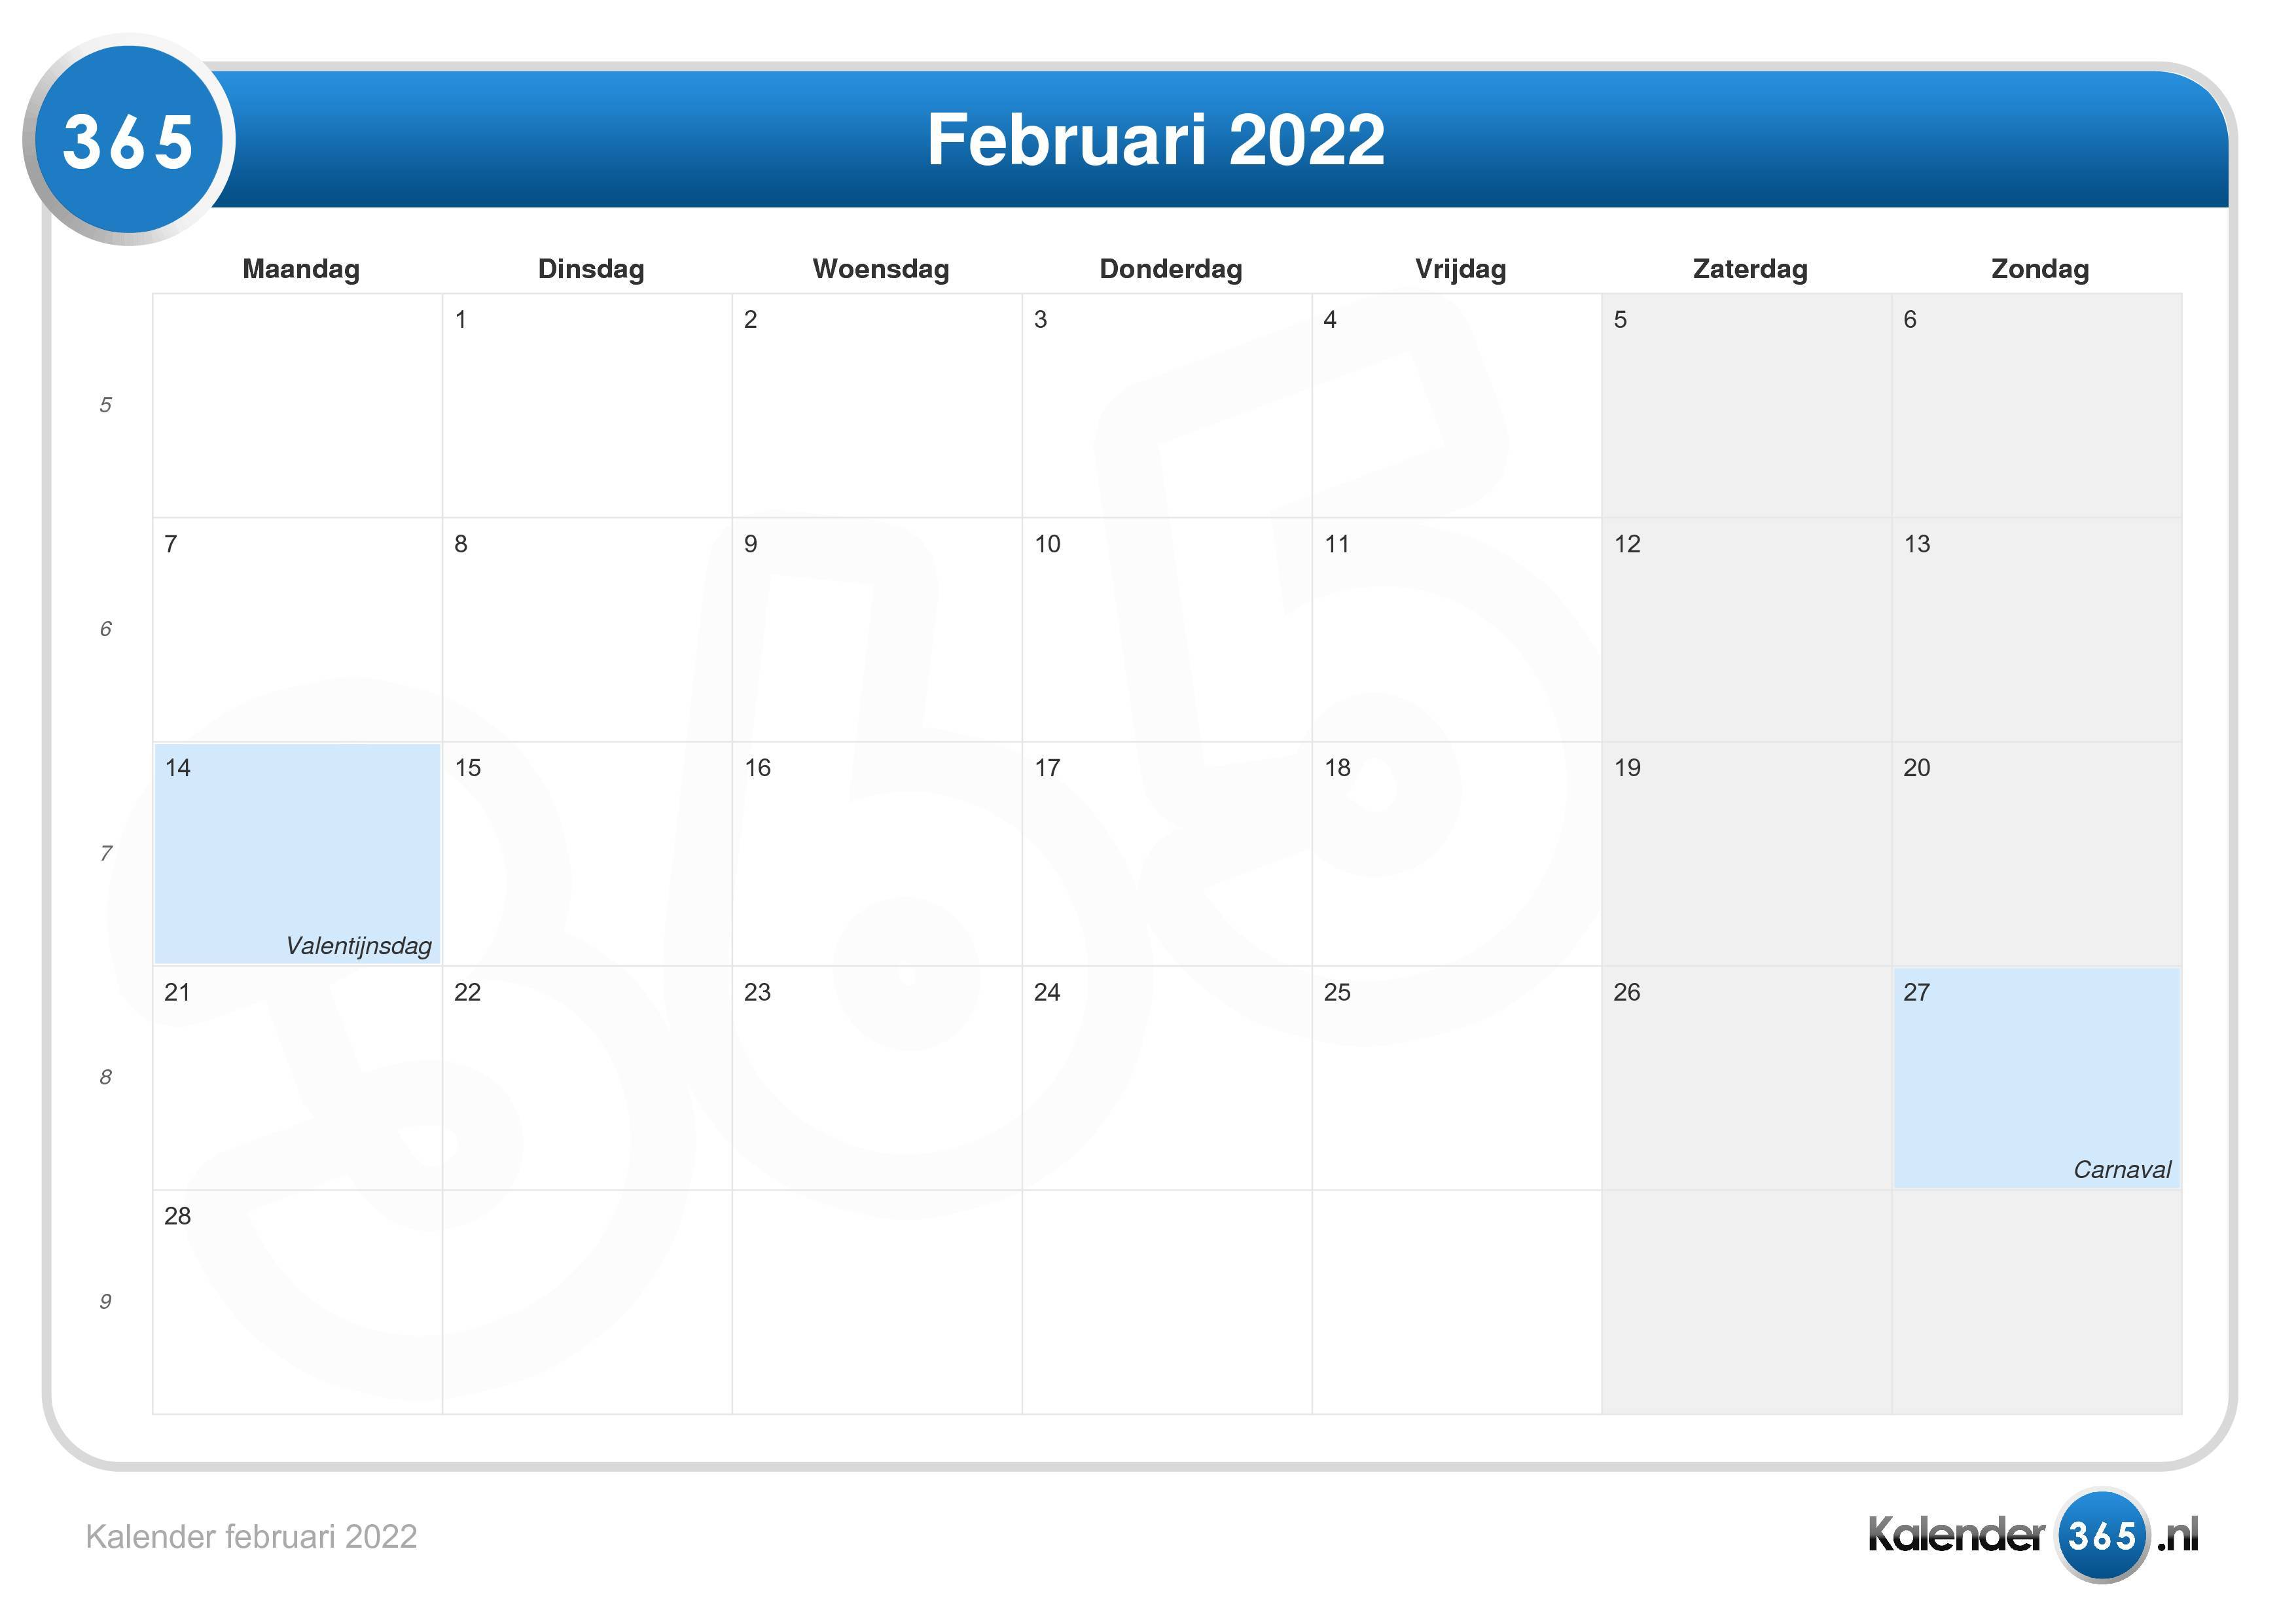 2022 kalendar februari February 2022